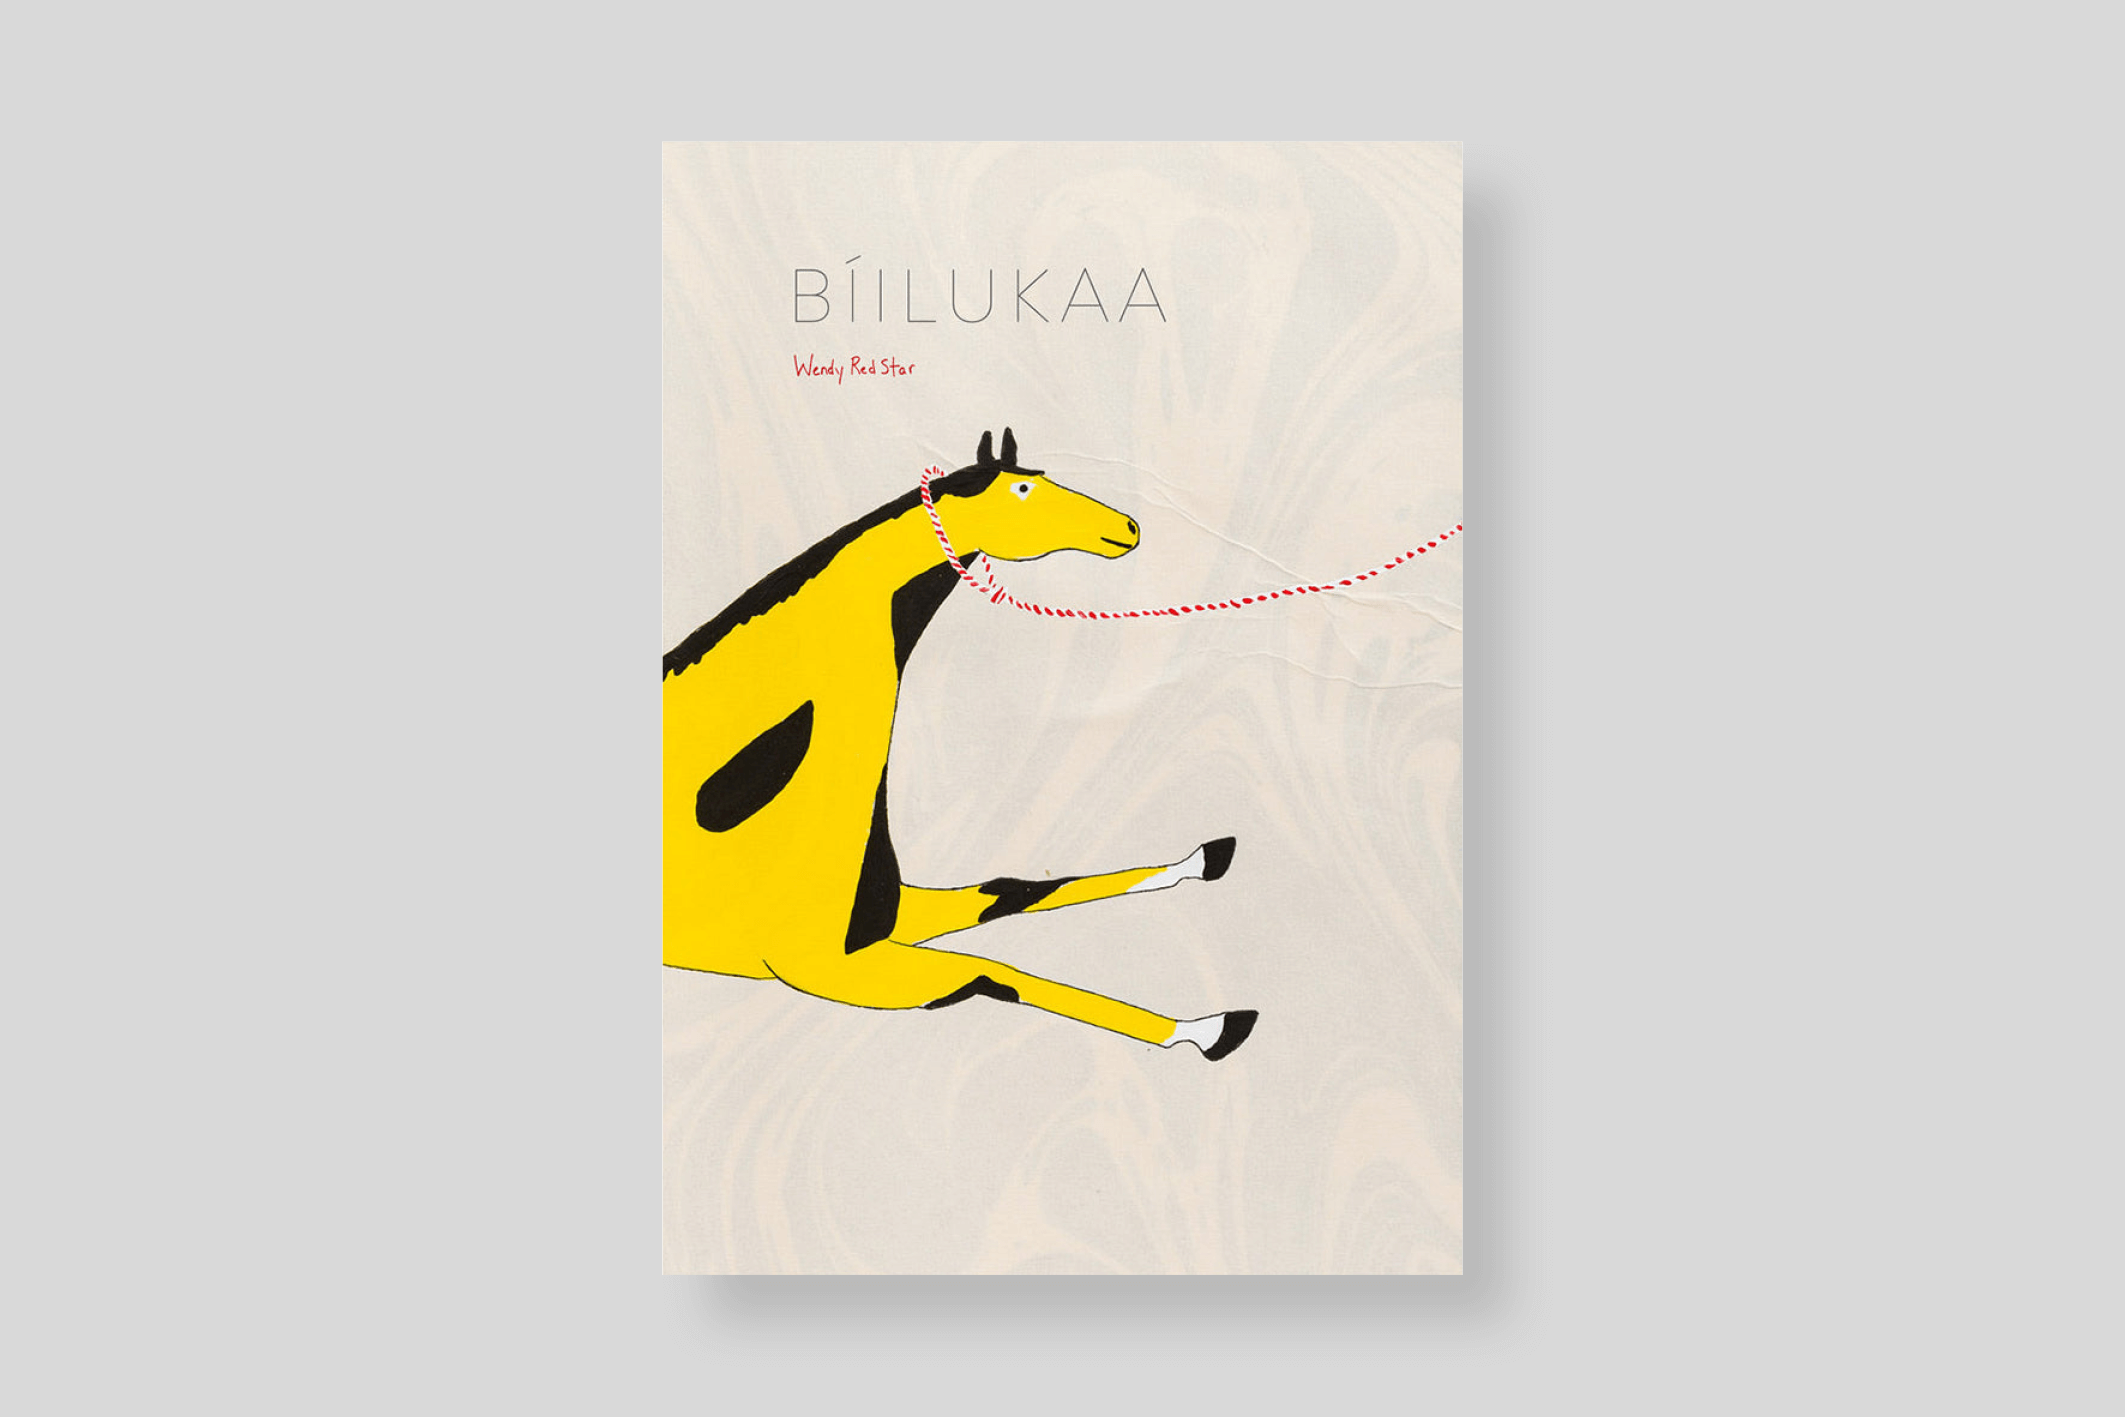 biilukaa-red-star-radius-books-cover